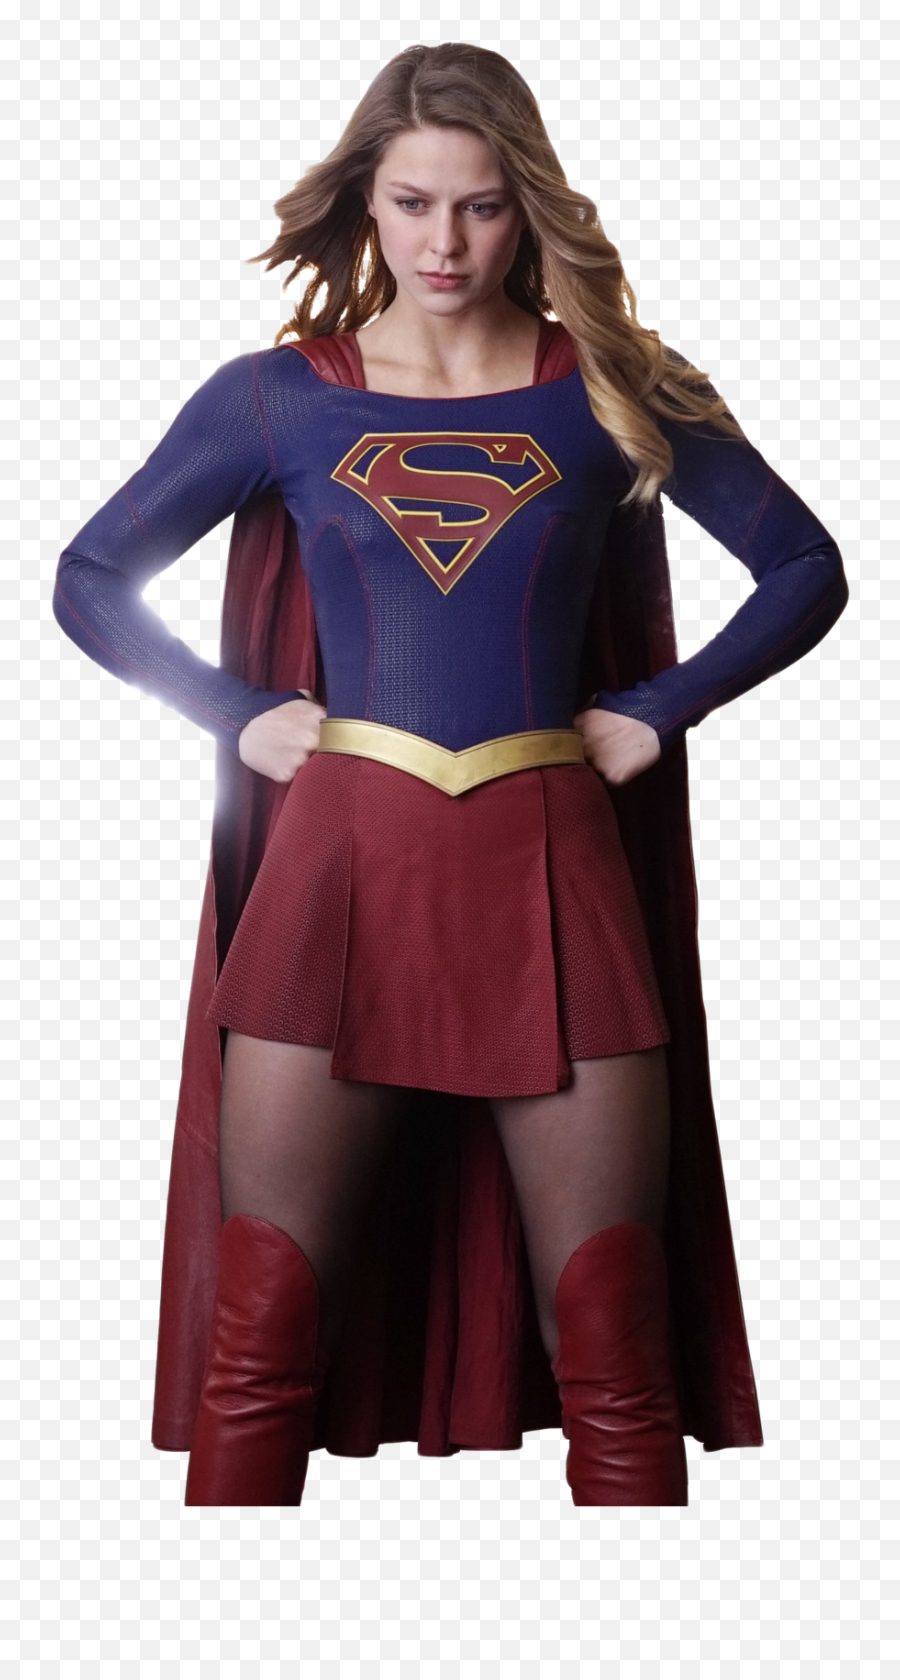 Supergirl Free Png Image - Supergirl Png,Supergirl Png